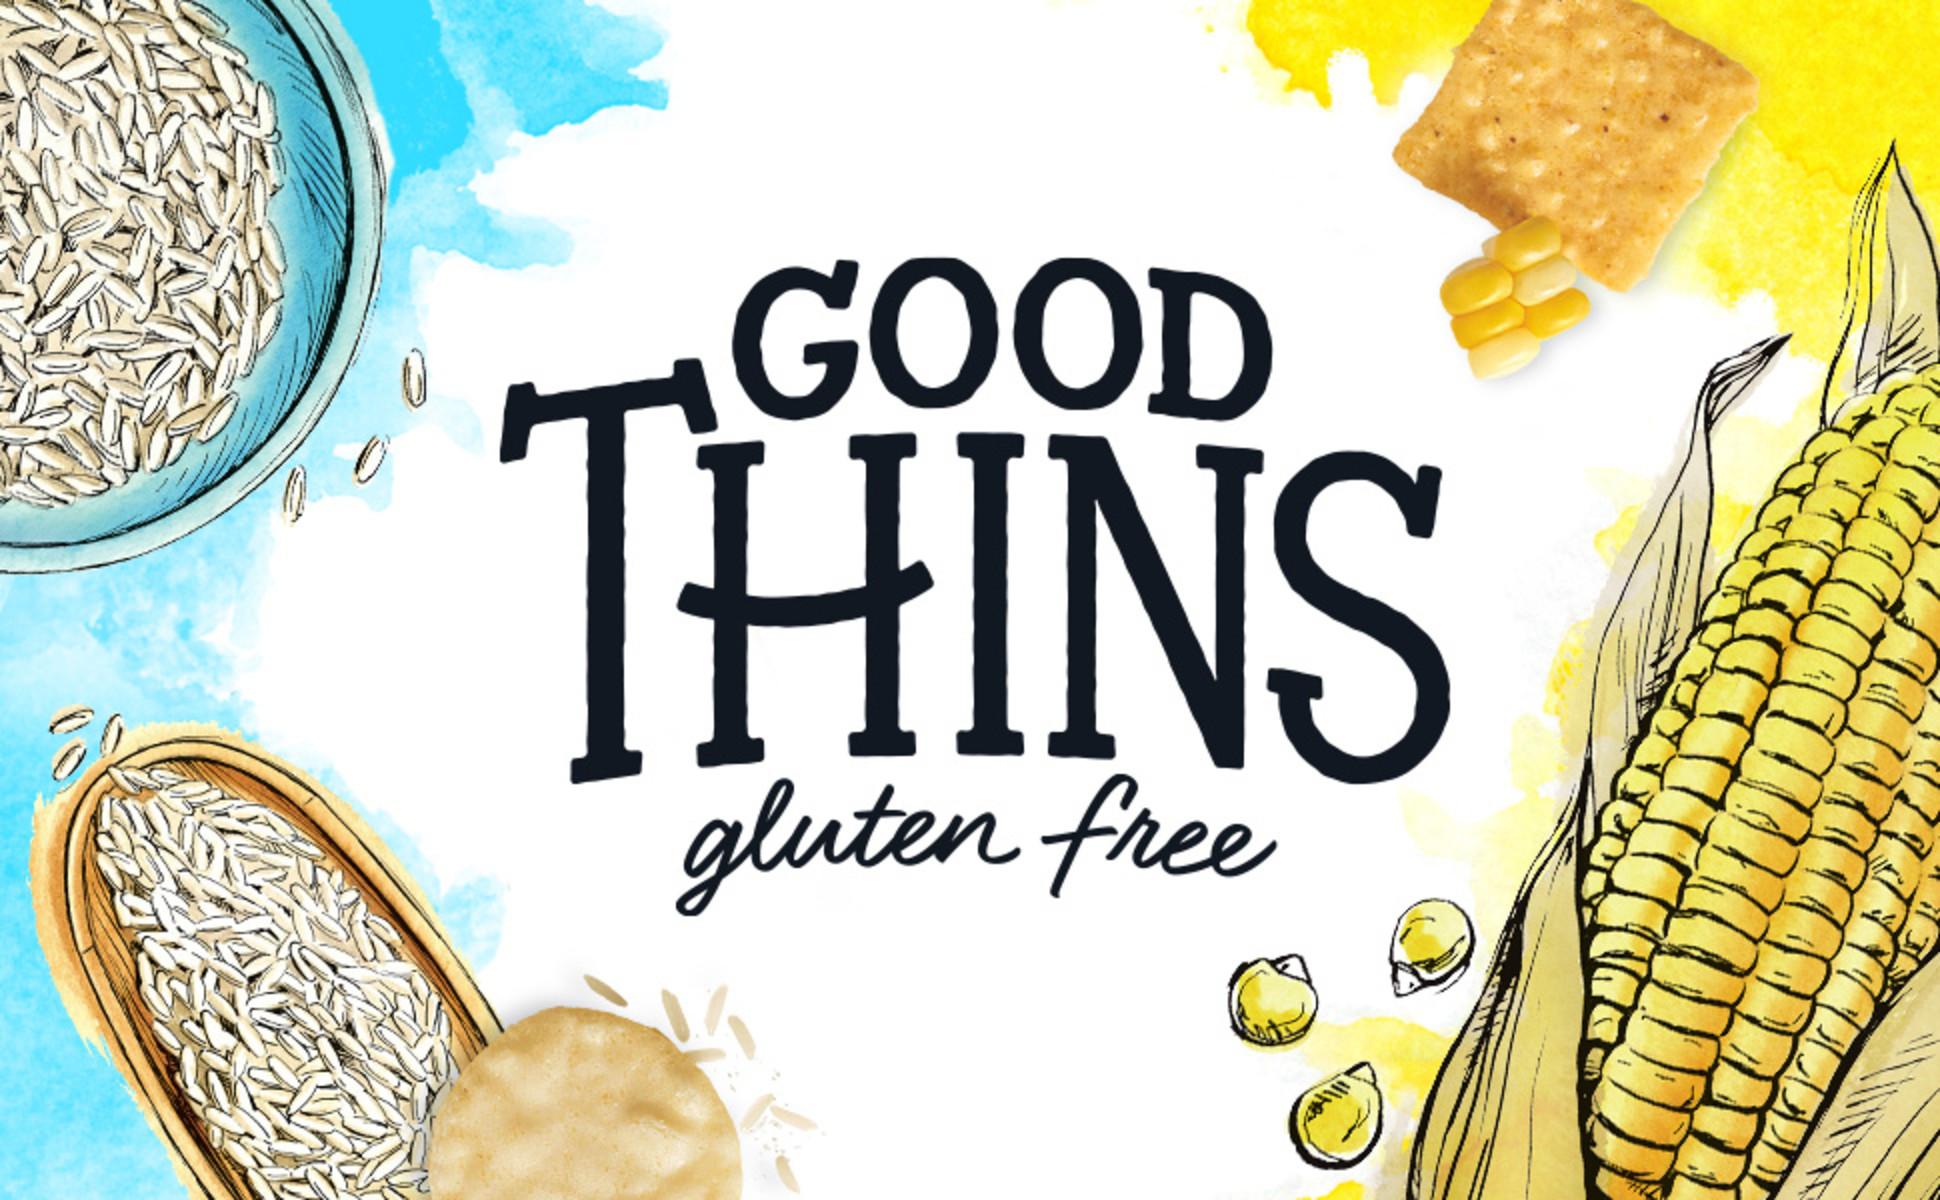 Good Thins Garden Veggie Rice Snacks Gluten Free Crackers, 3.5 oz